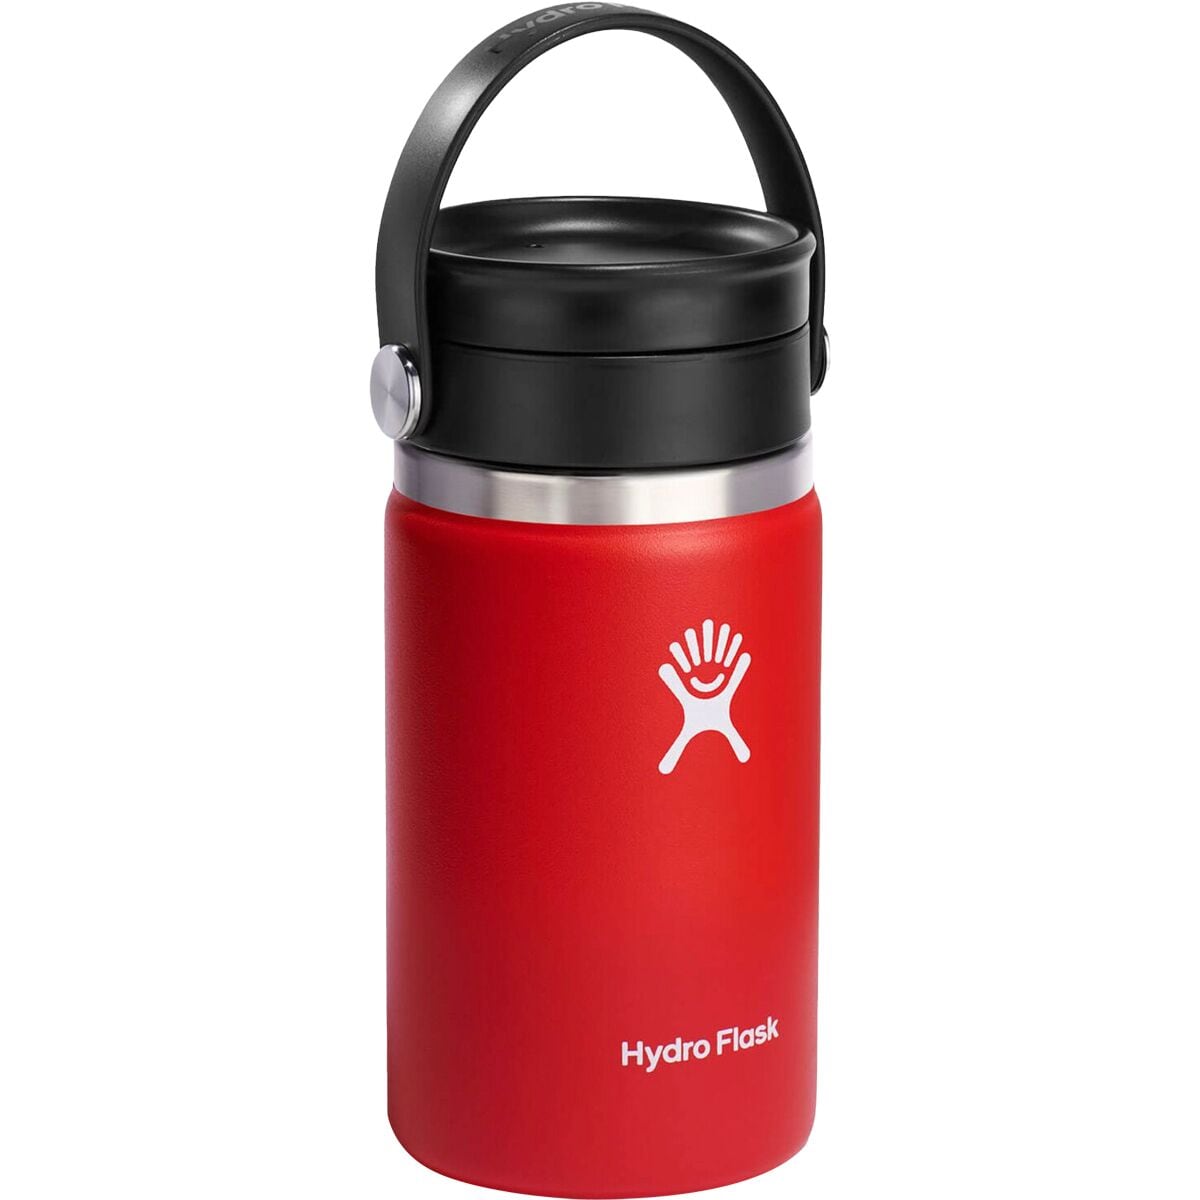 Hydro flask Coffee Mug 354ml Blue